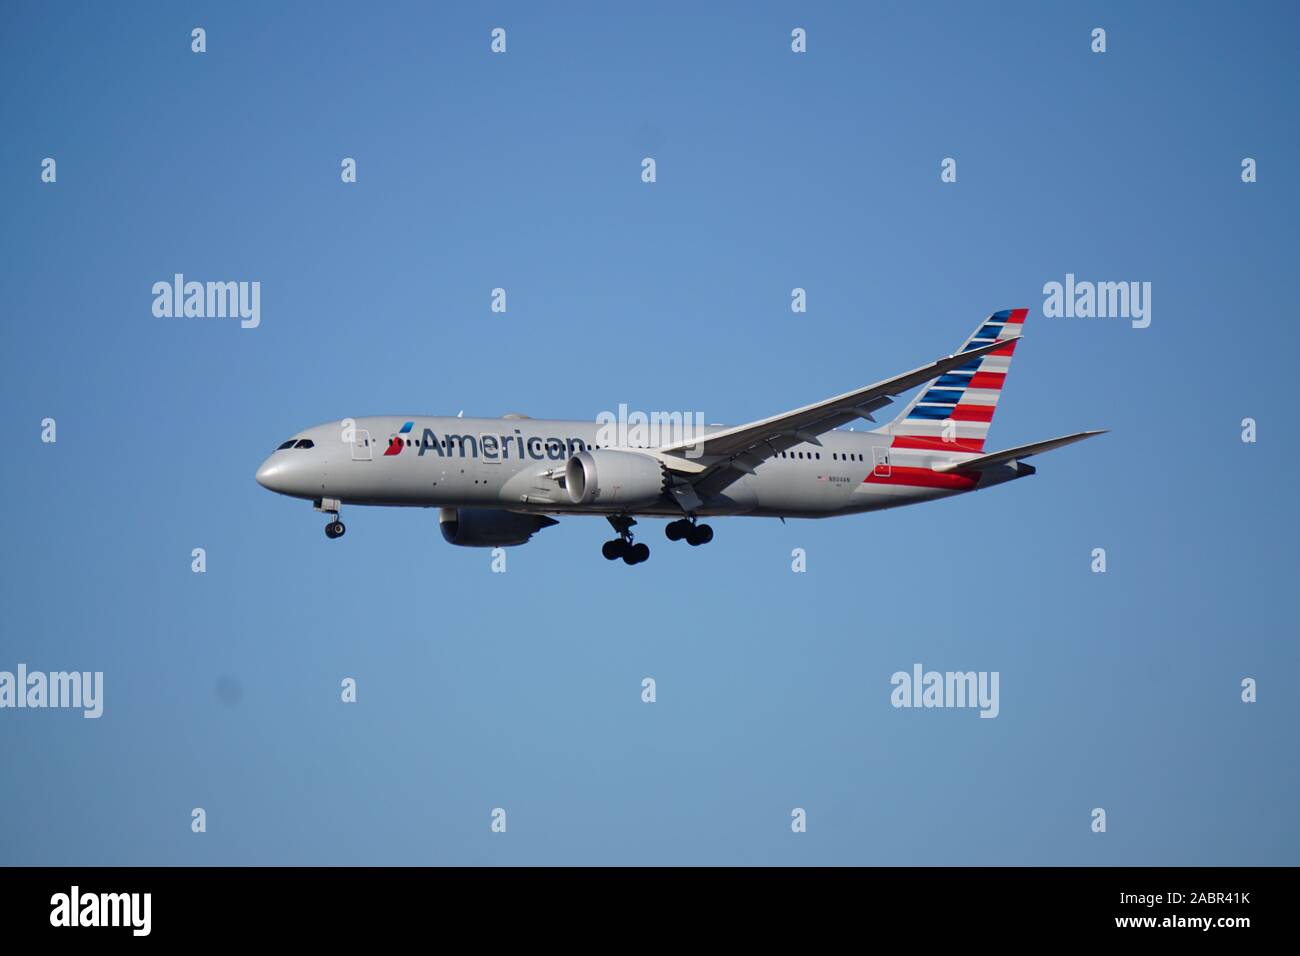 L'avion American Airlines Embraer ERJ 145 approche de l'aéroport international O'Hare de Chicago. Banque D'Images